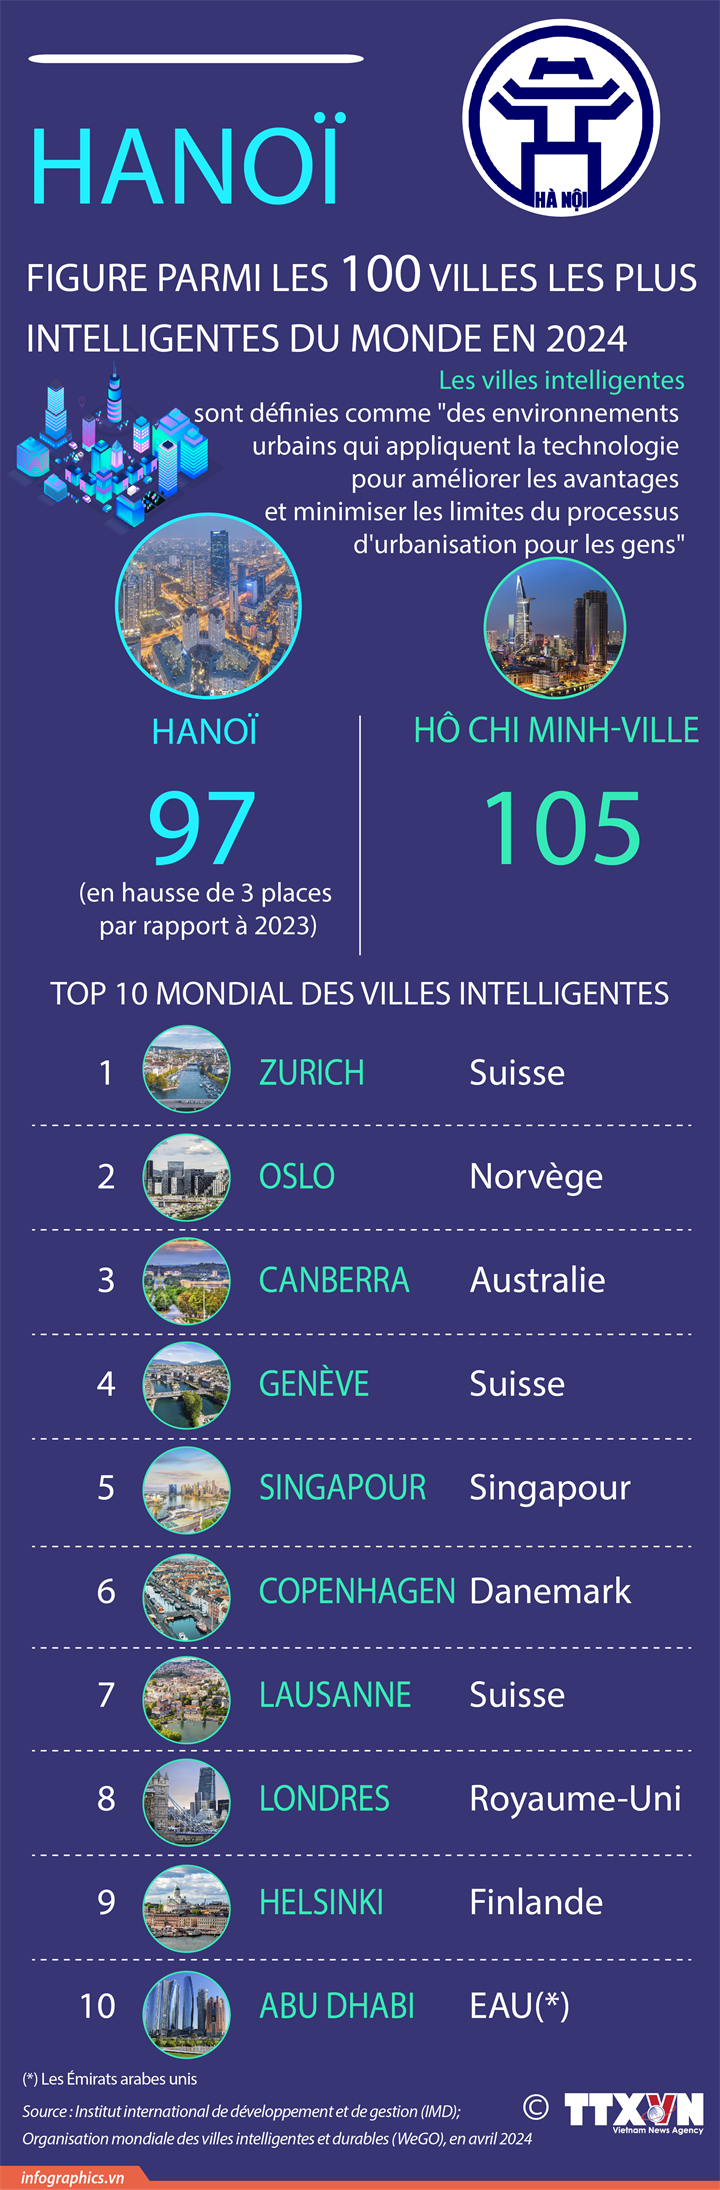 Hanoï figure parmi les 100 villes les plus intelligentes du monde en 2024